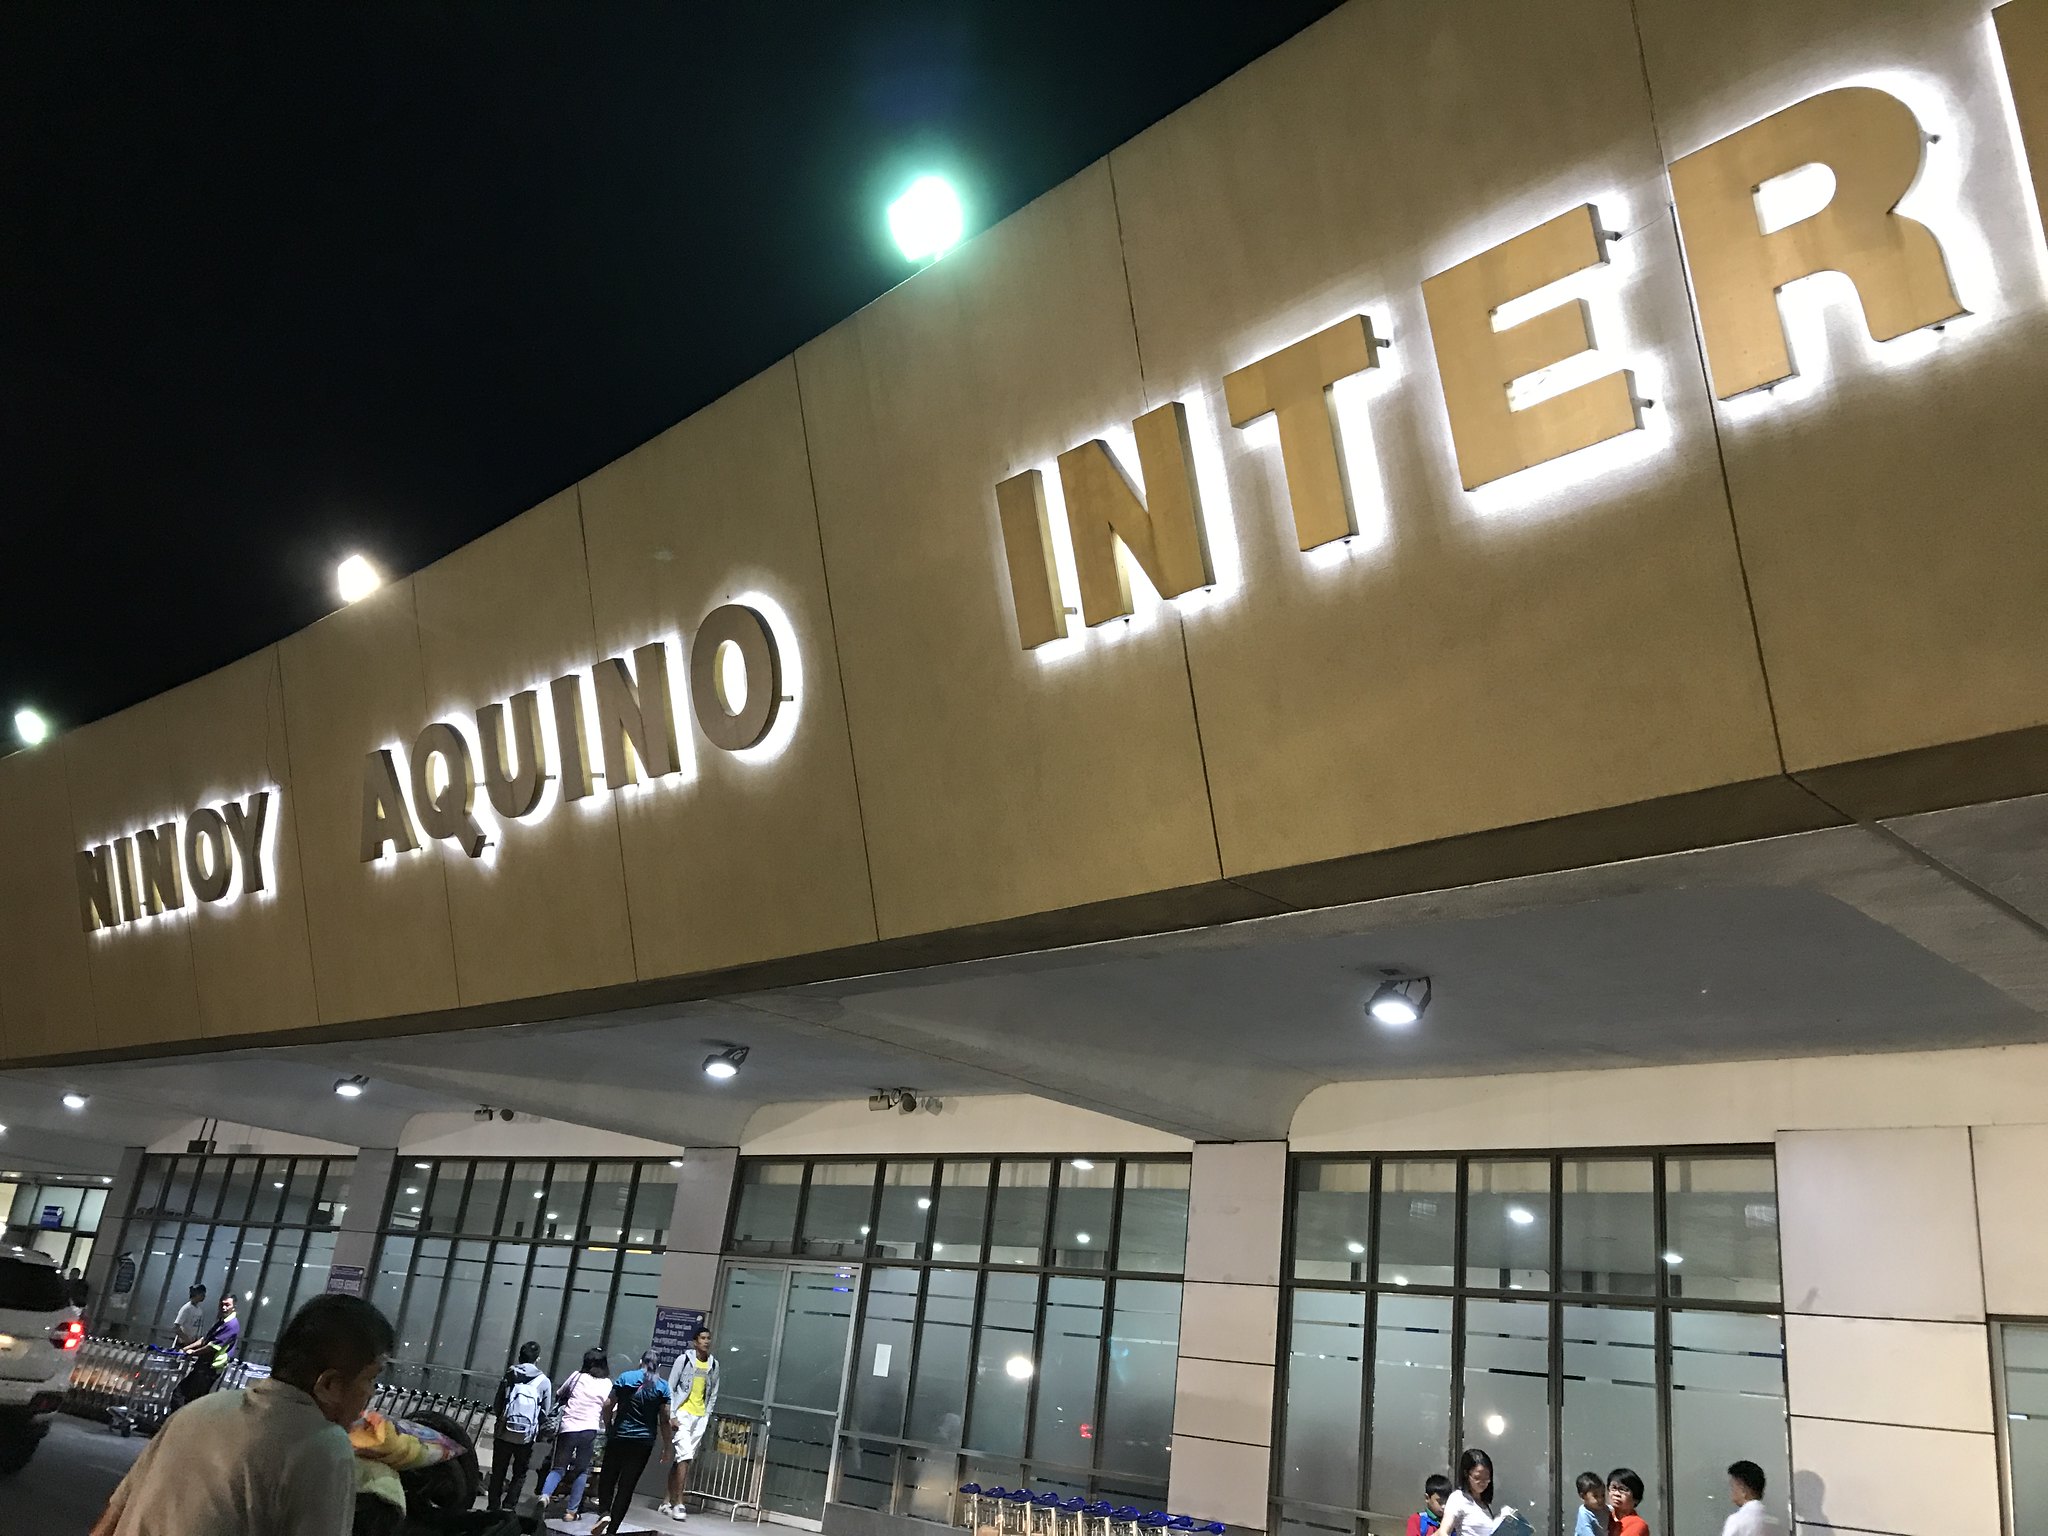 Ninoy Aquino International Airport, June 15, 2018